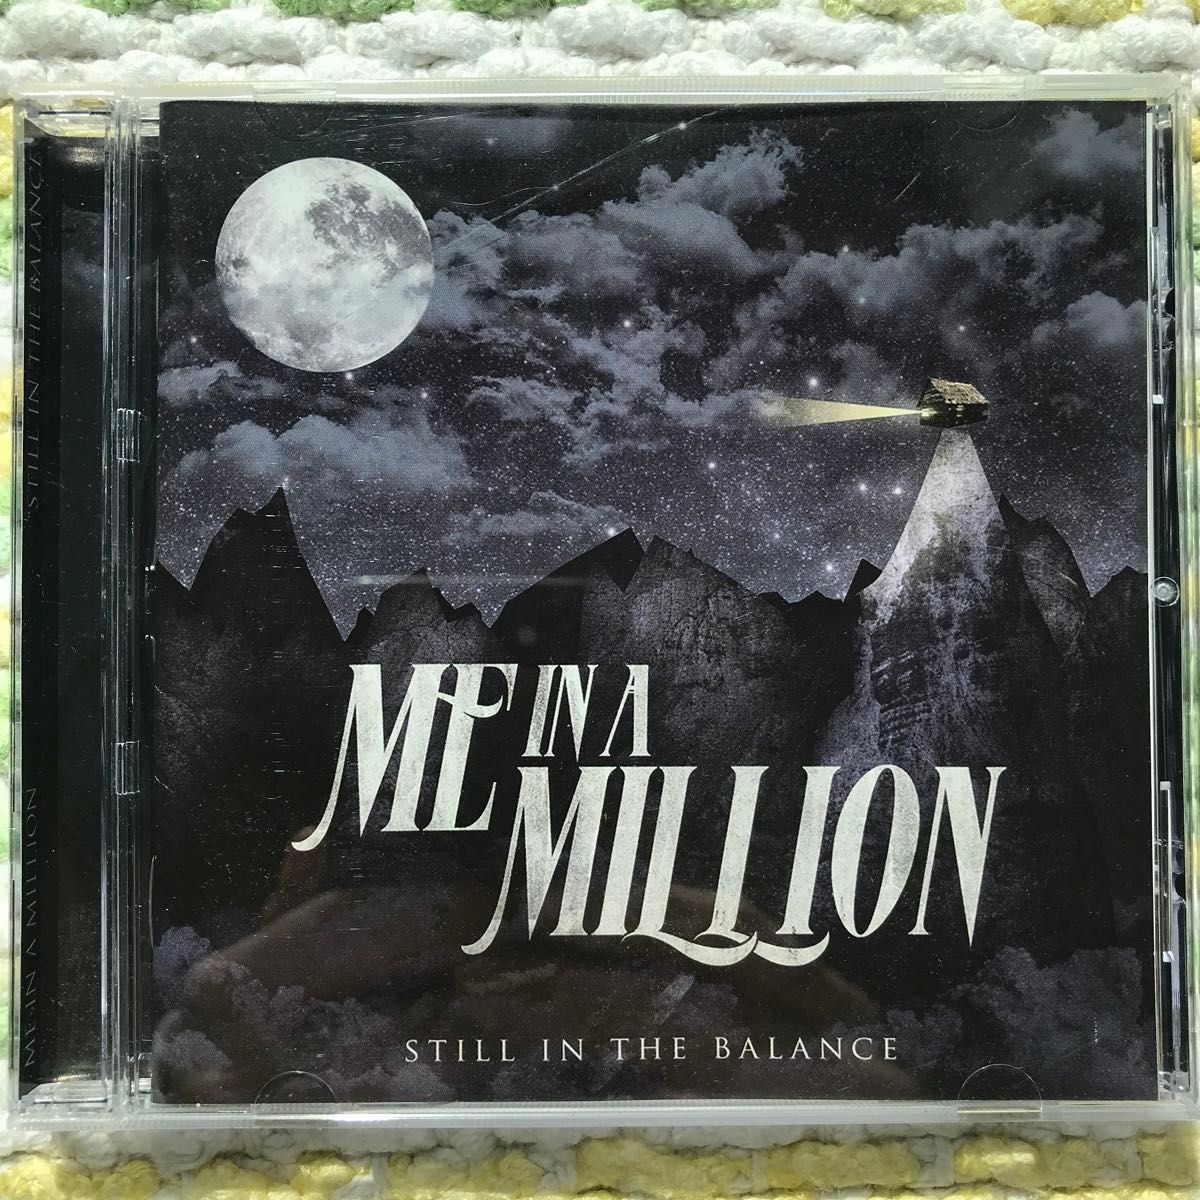 【国内盤CD】 Me in a million - still in the balance